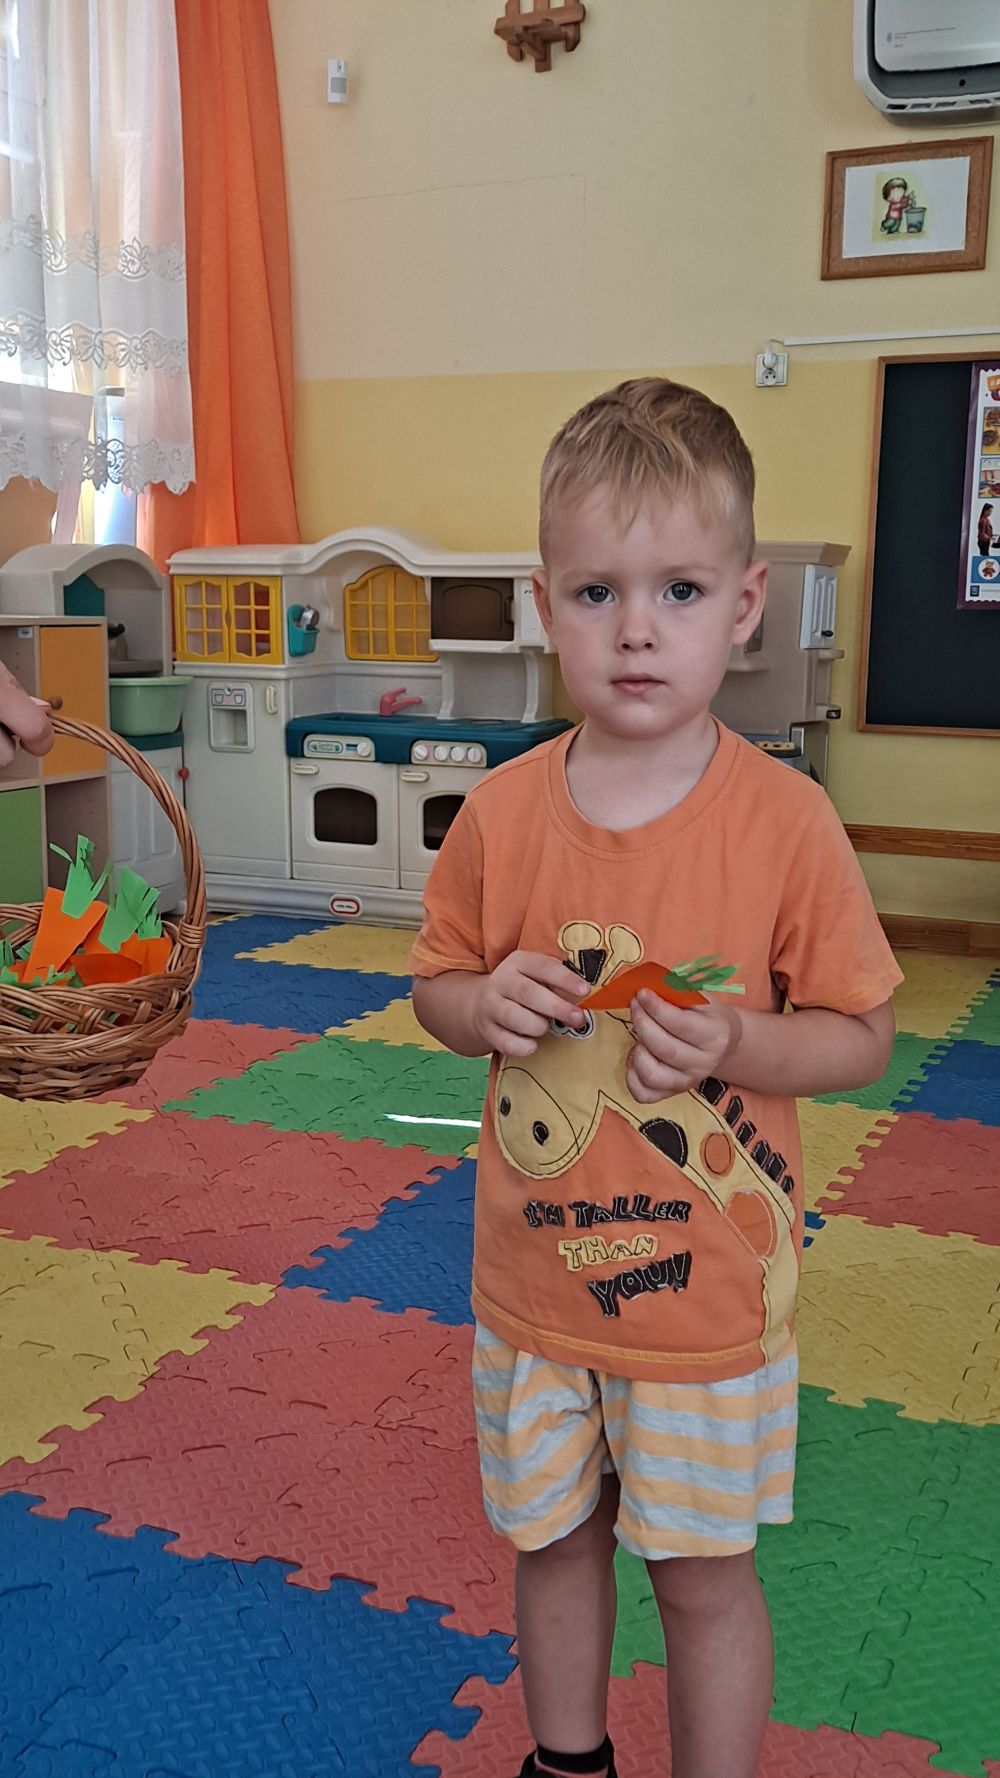 Chłopiec ubrany na pomarańczowo trzyma w ręce marchewkę z papieru